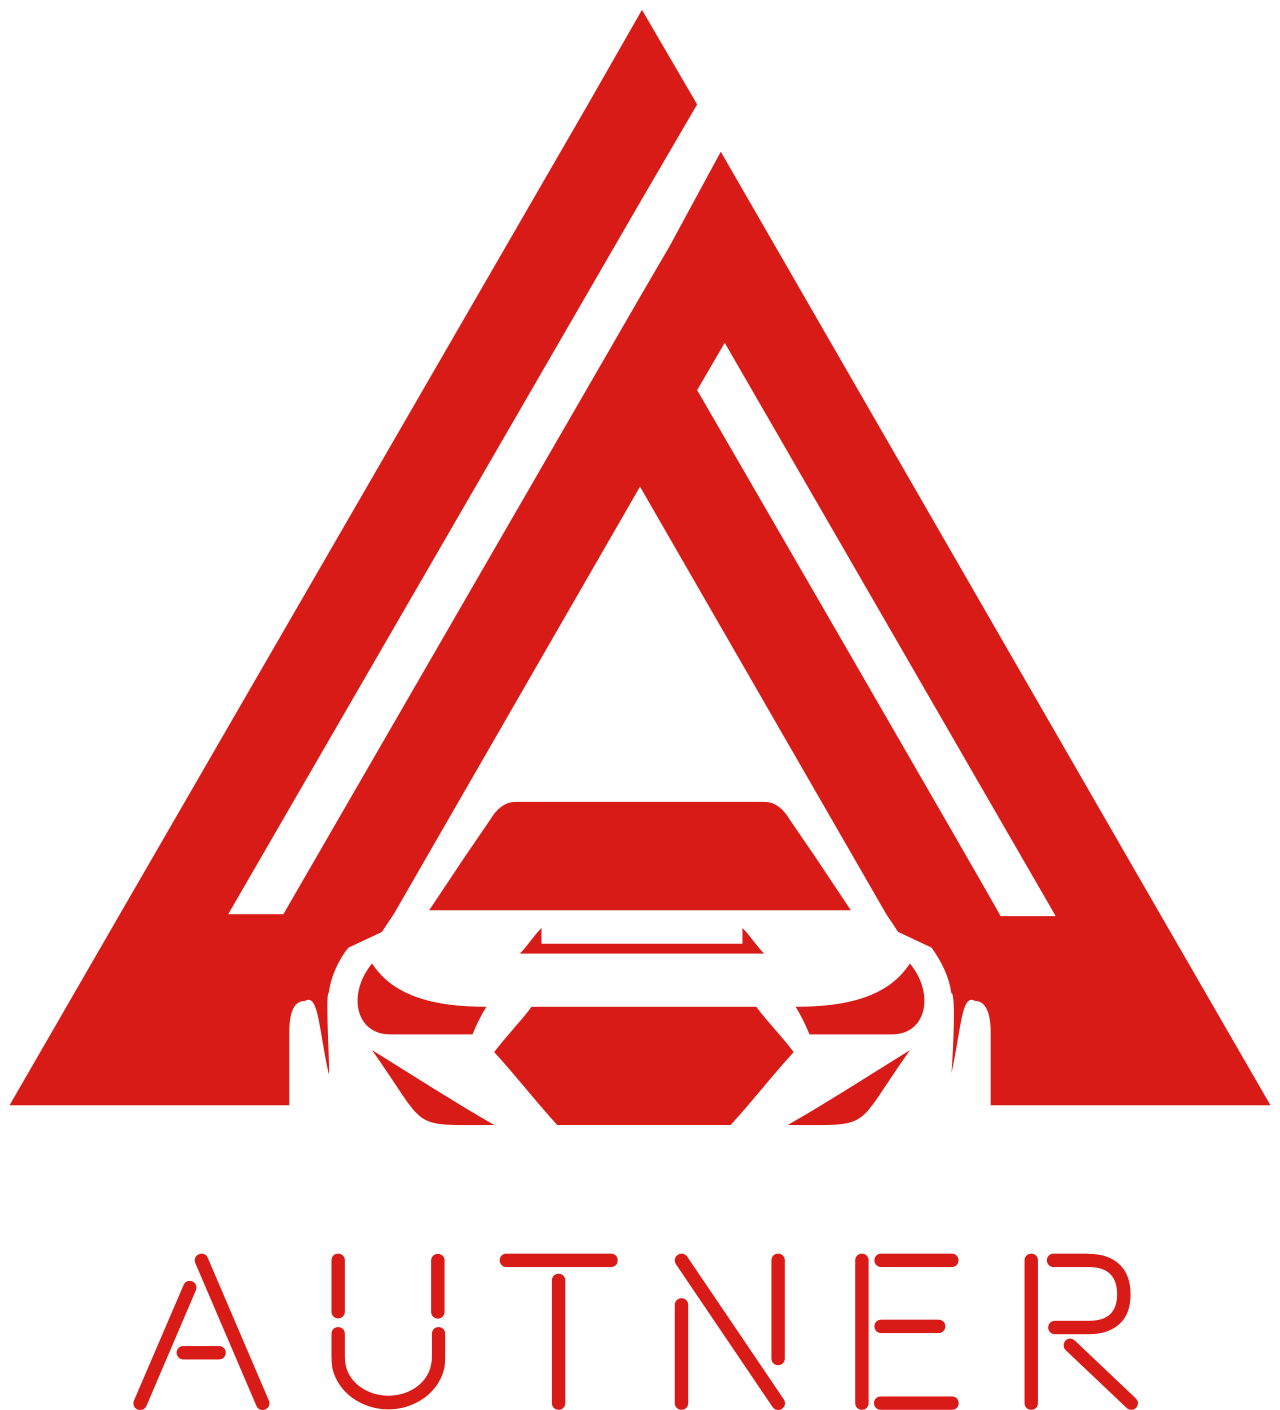 autner's web page